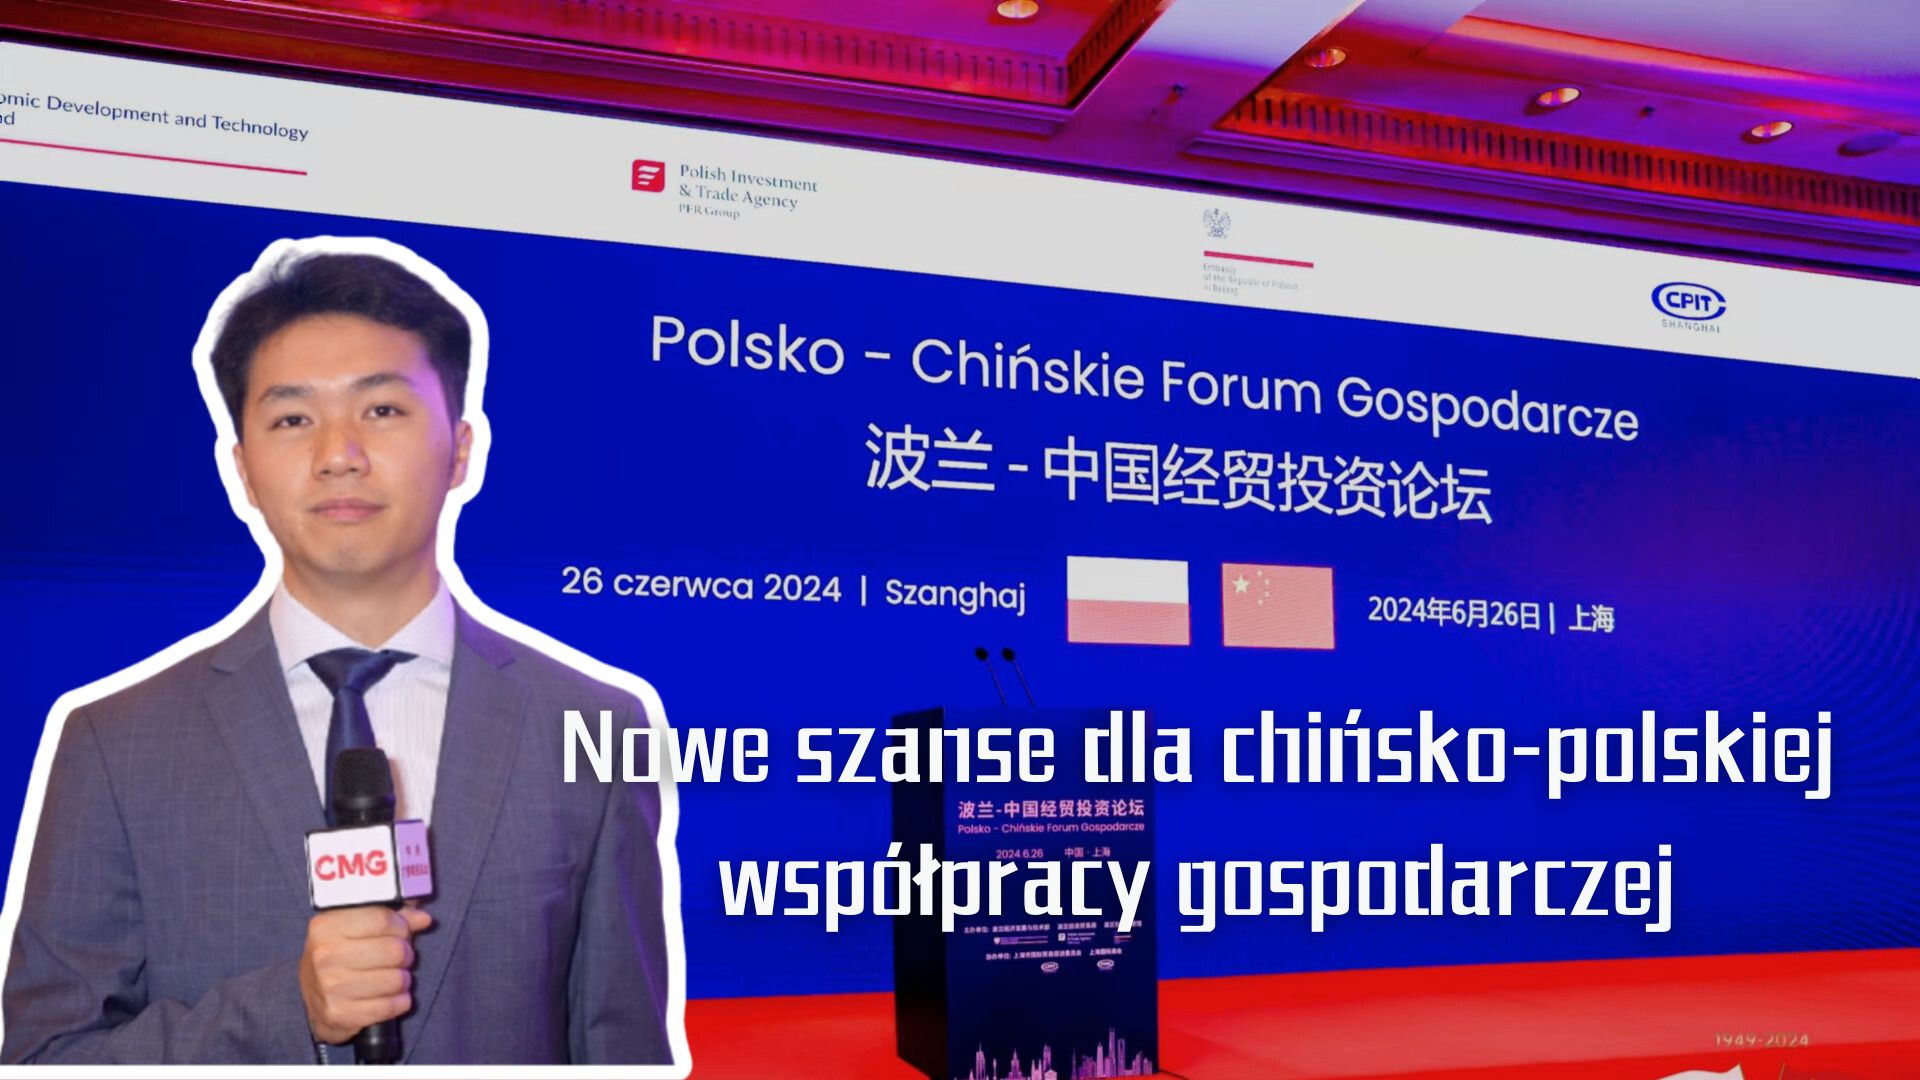  Nowe szanse dla chińsko-polskiej współpracy gospodarczej